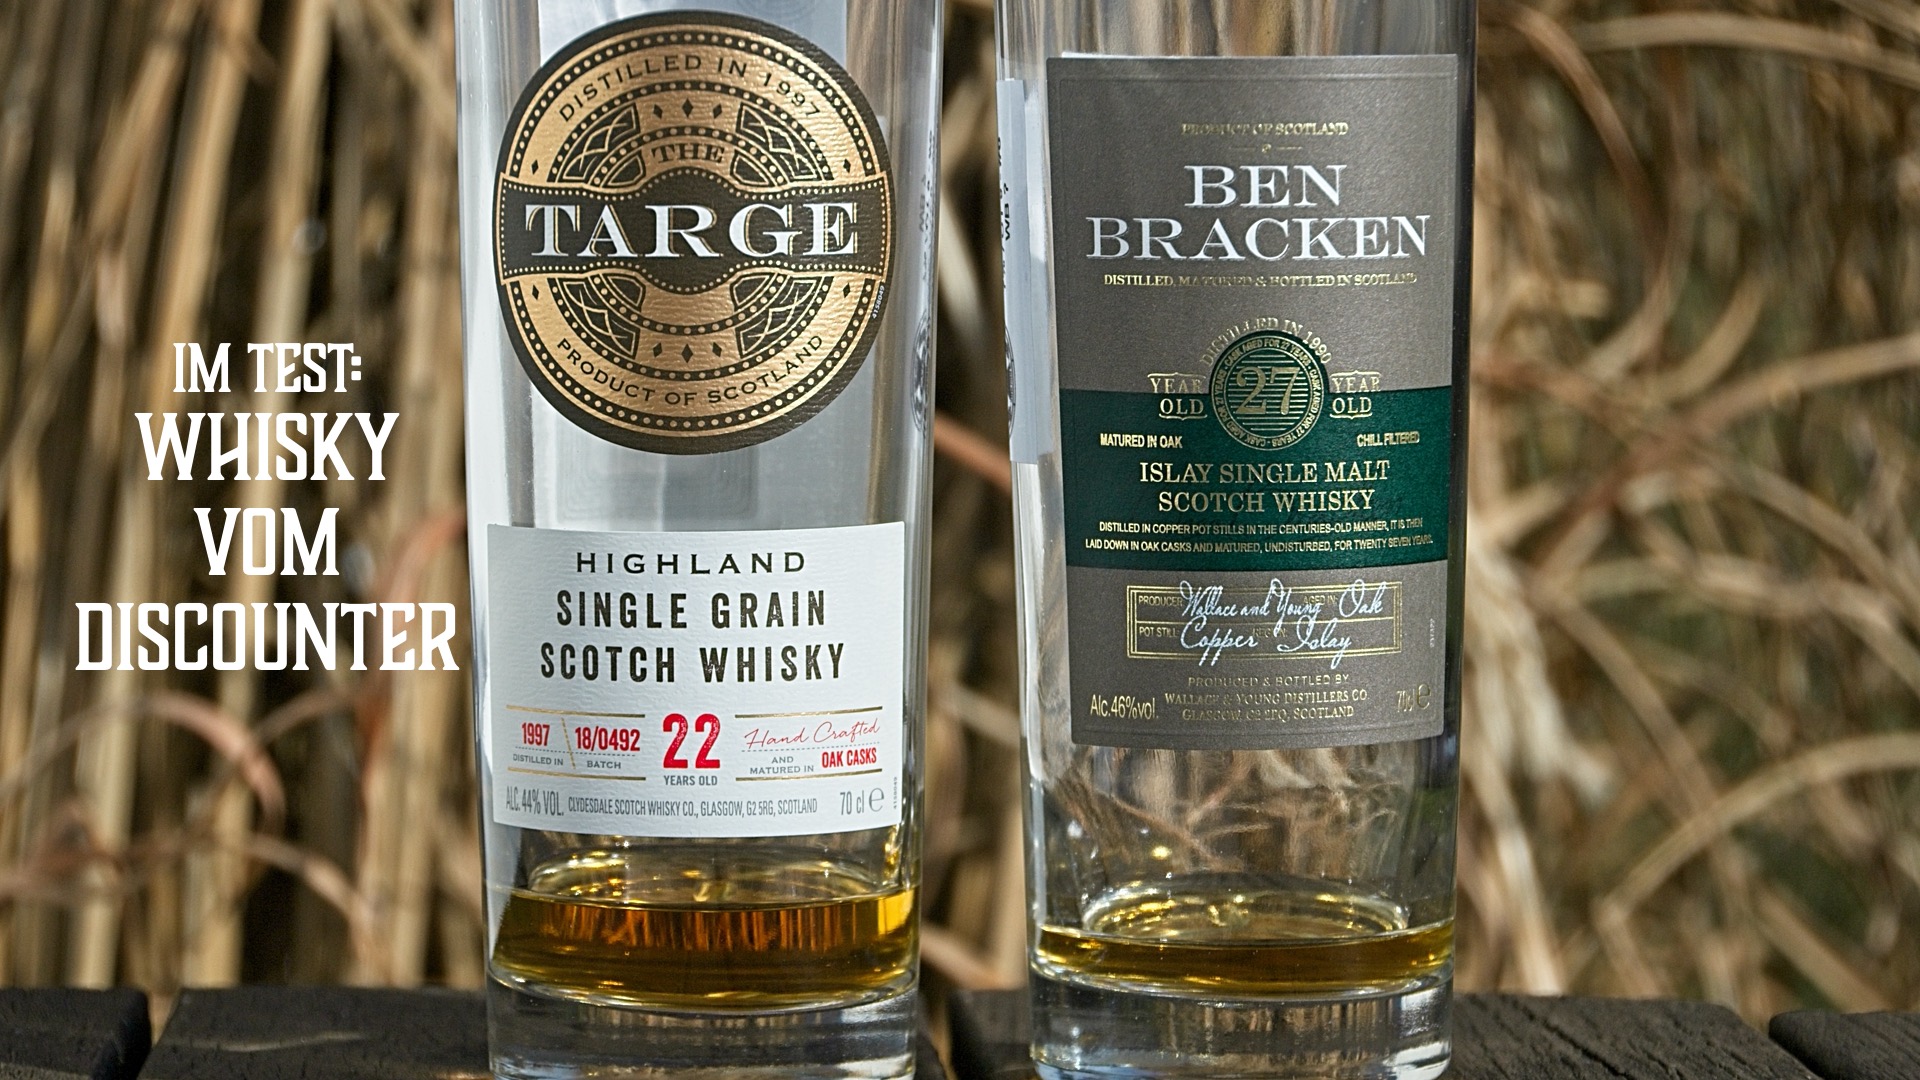 Im Test: Targe 22yo und Ben Bracken Islay 27yo - Whisky vom Discounter |  Friends of Single Malt